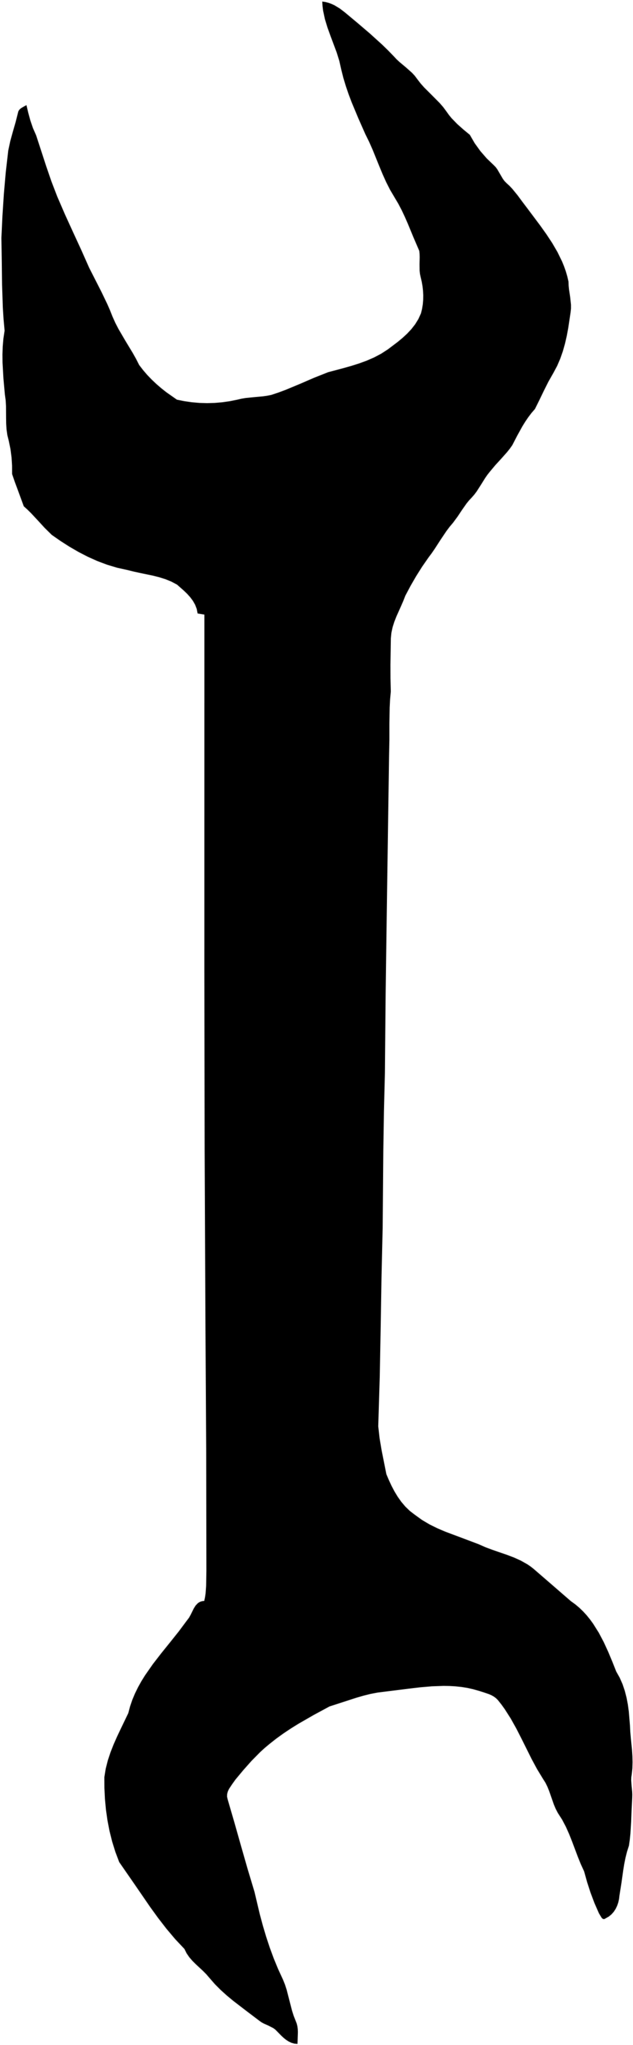 Open End Wrench - Logo Kunci Pas Ring (958x2279)